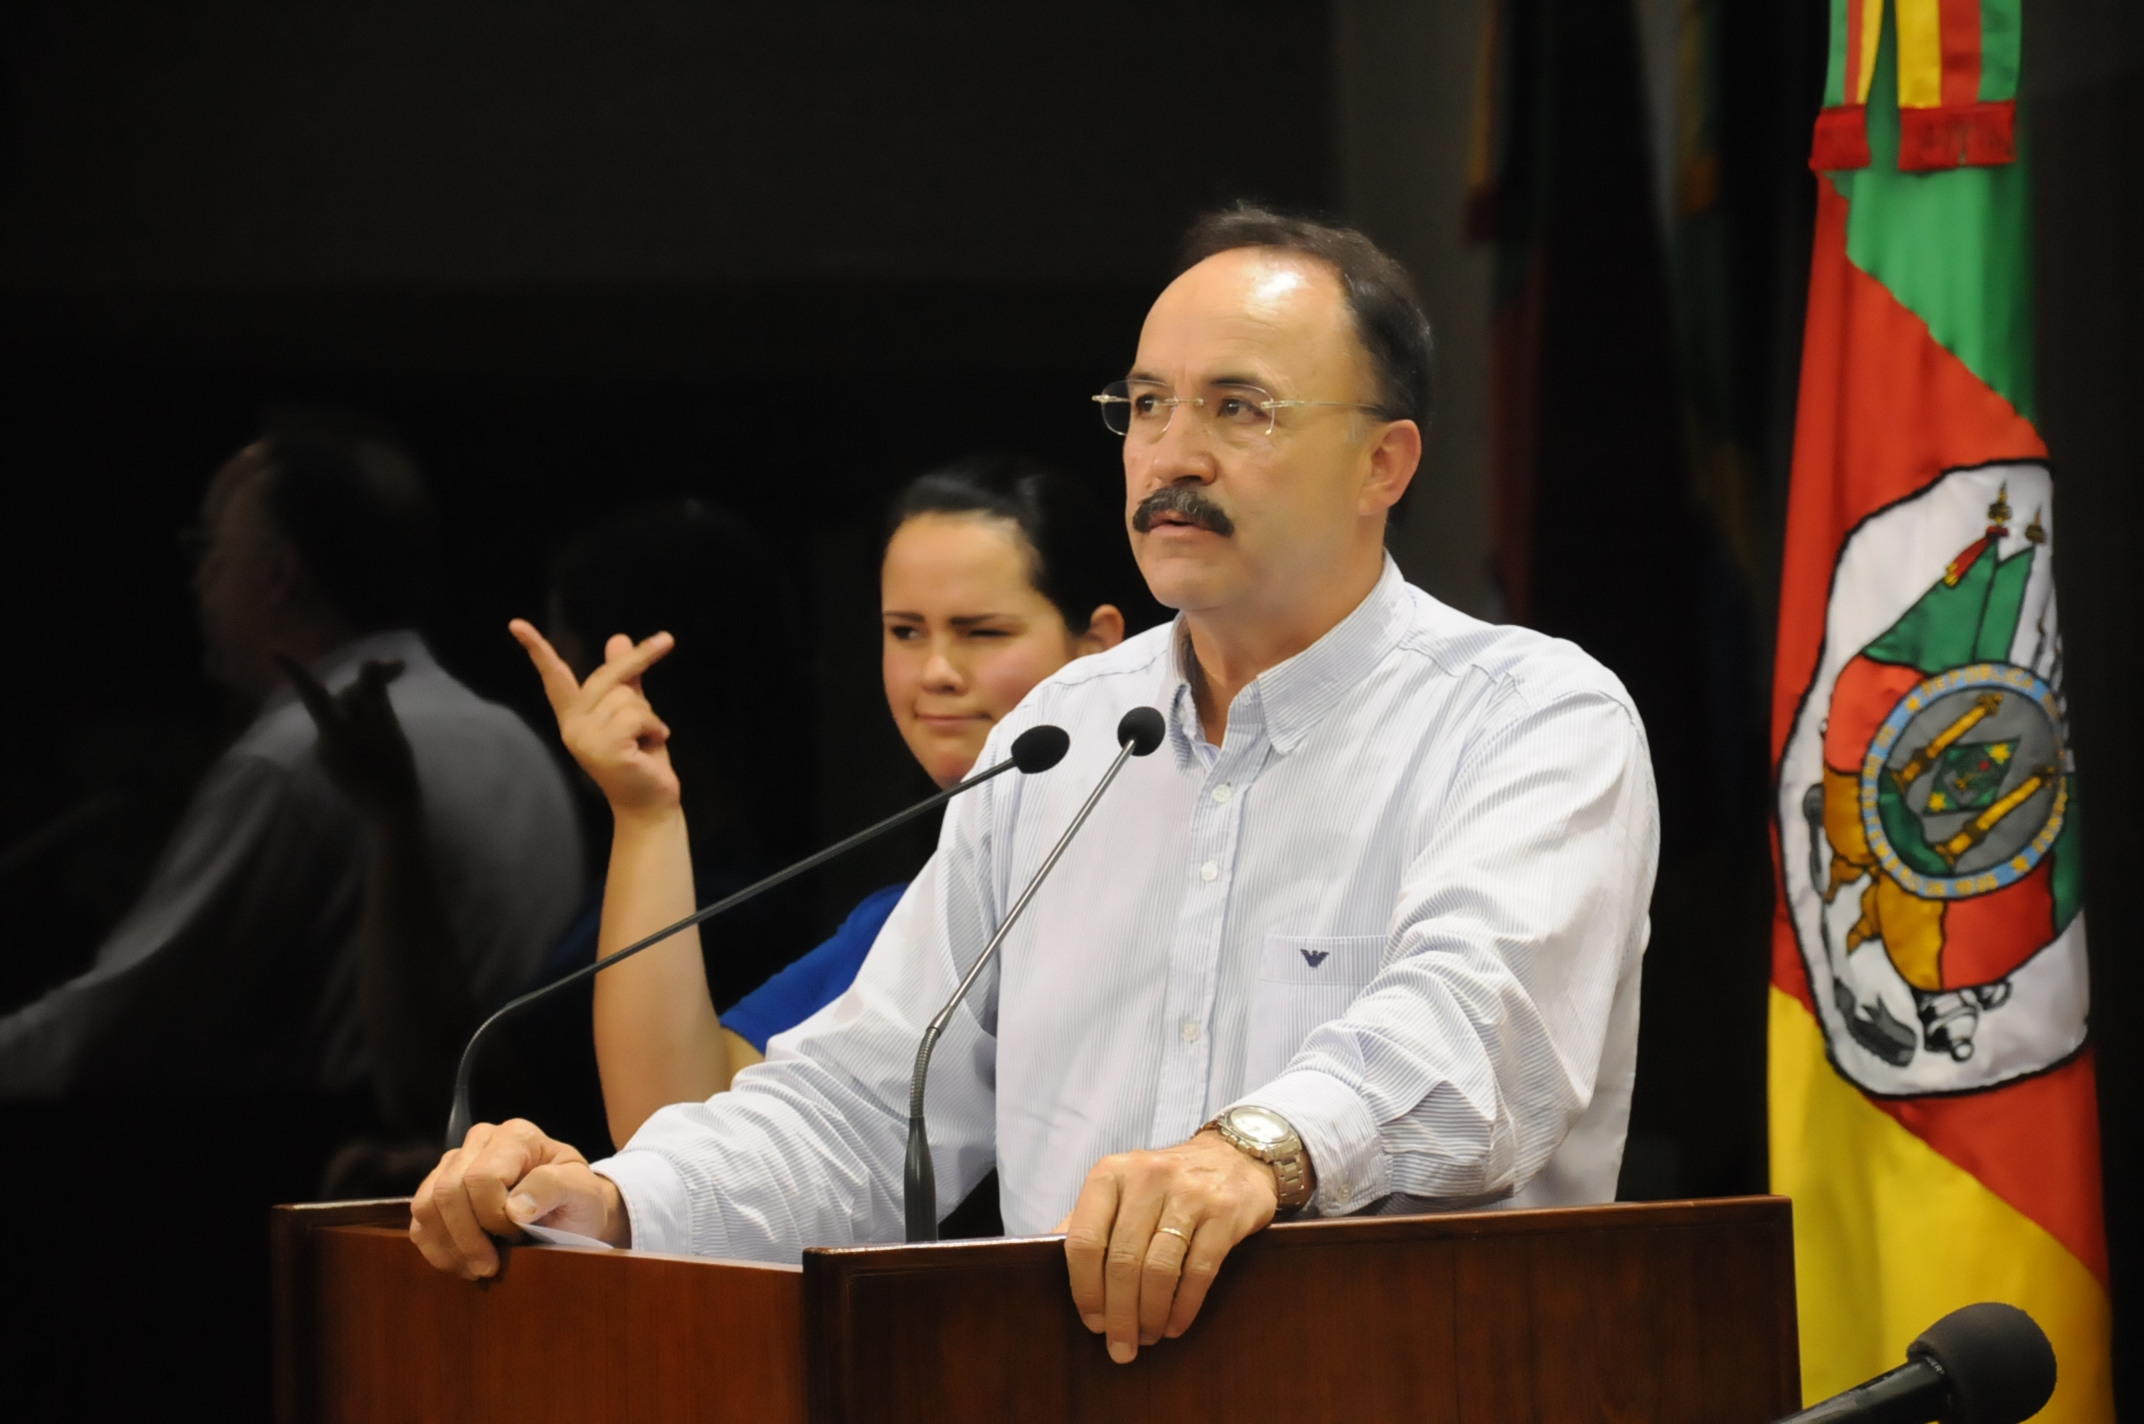 Mauro destaca a homenagem da Assembleia Legislativa à Agrale